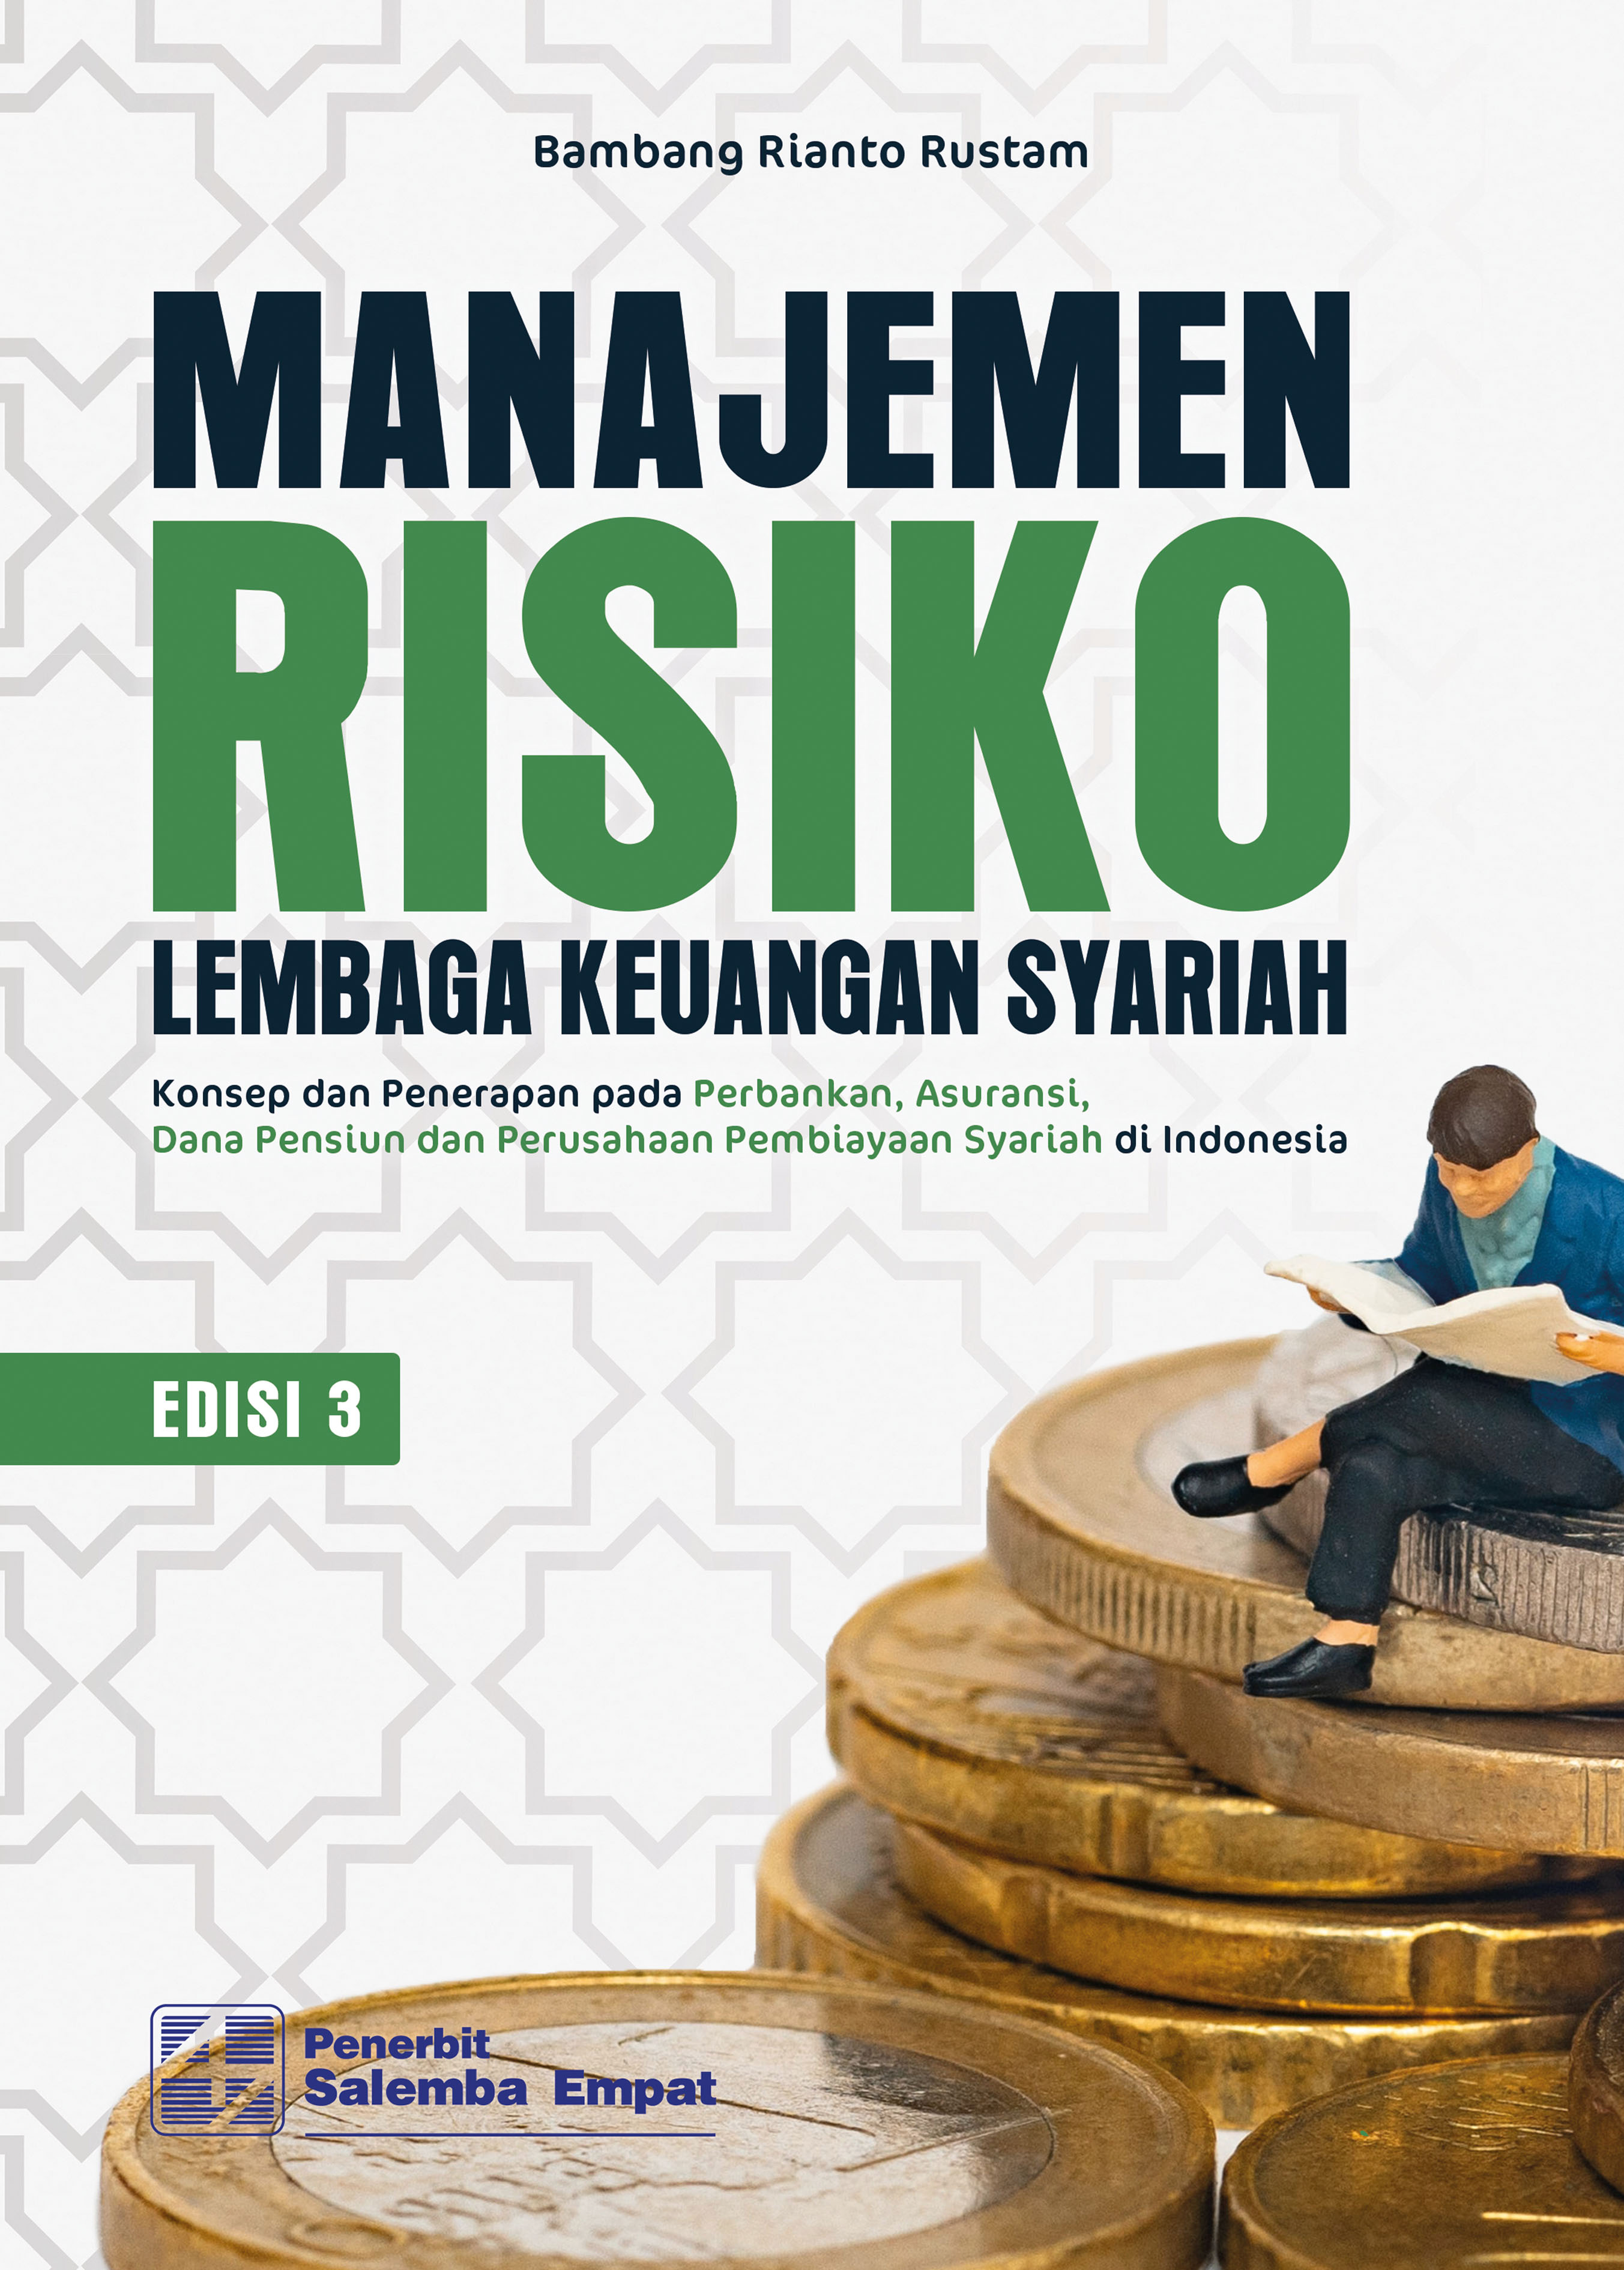 eBook Manajemen Risiko Lembaga Keuangan Syariah, Edisi 3: Konsep dan Penerapan pada Perbankan, Asuransi, Dana Pensiun, dan Perusahaan Pembiayaan Syariah di Indonesia (Bambang Rianto Rustam)